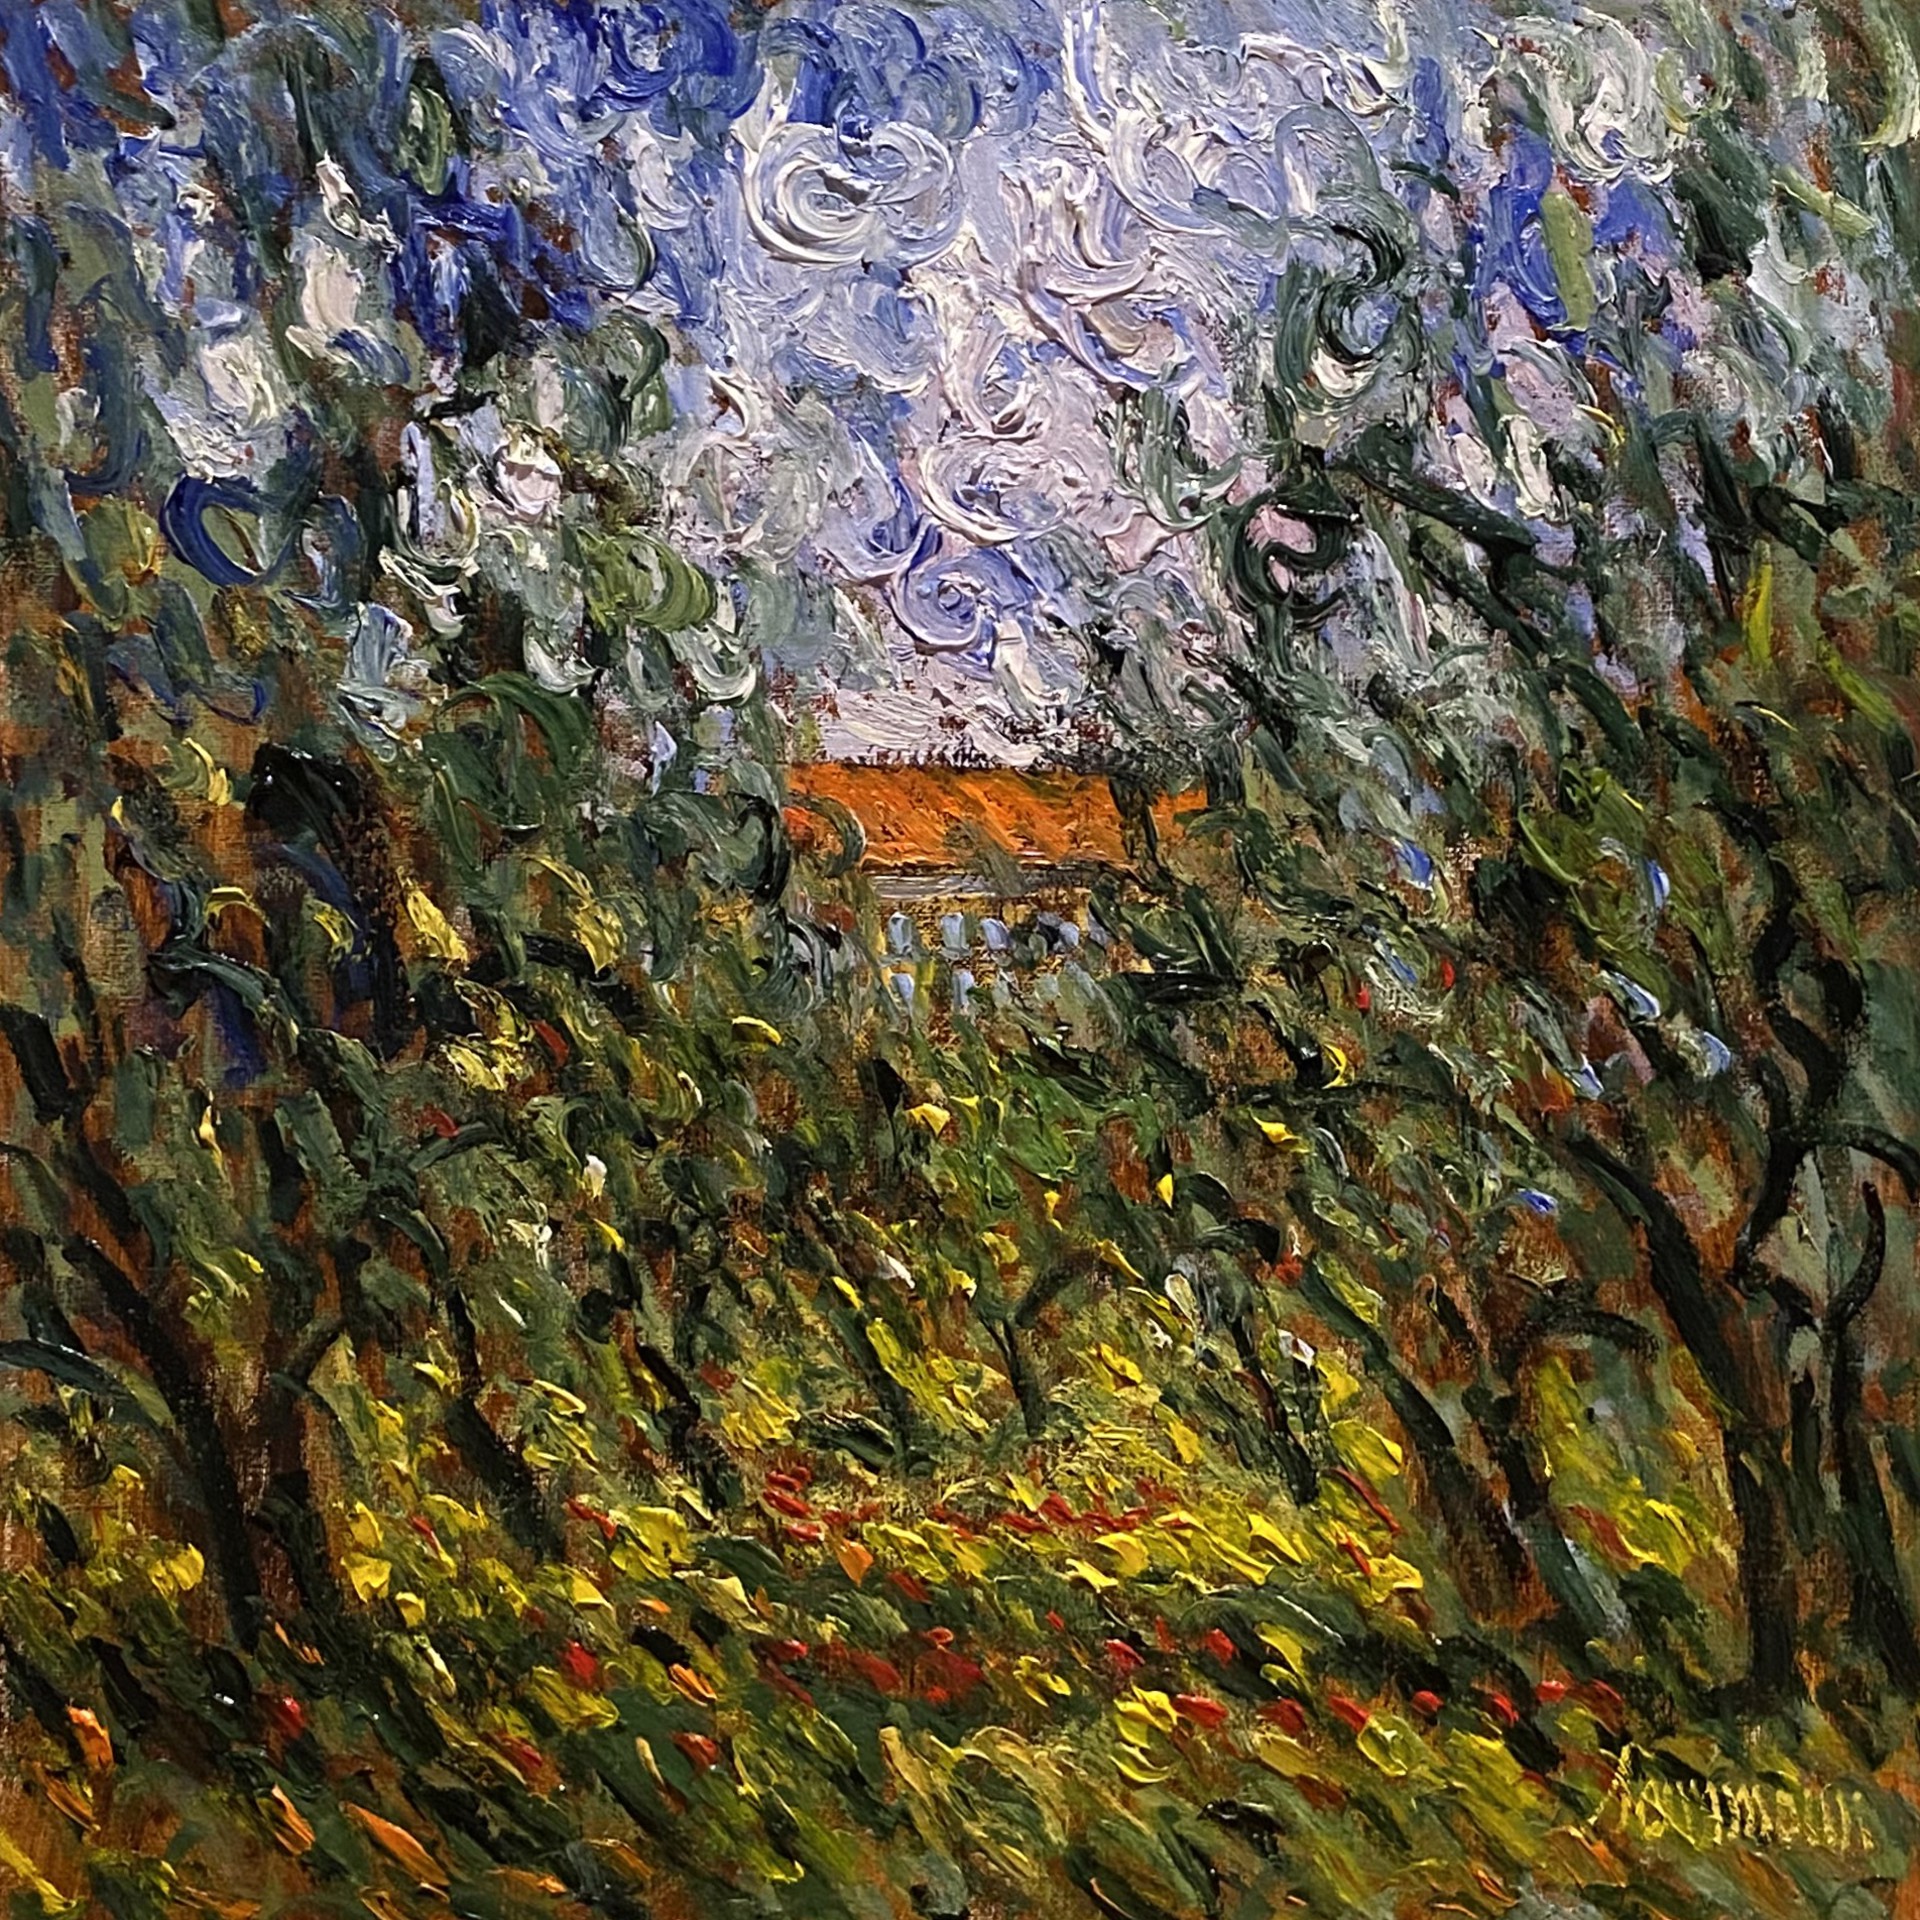 Farm house and olive grove, 20x20 by Samir Sammoun